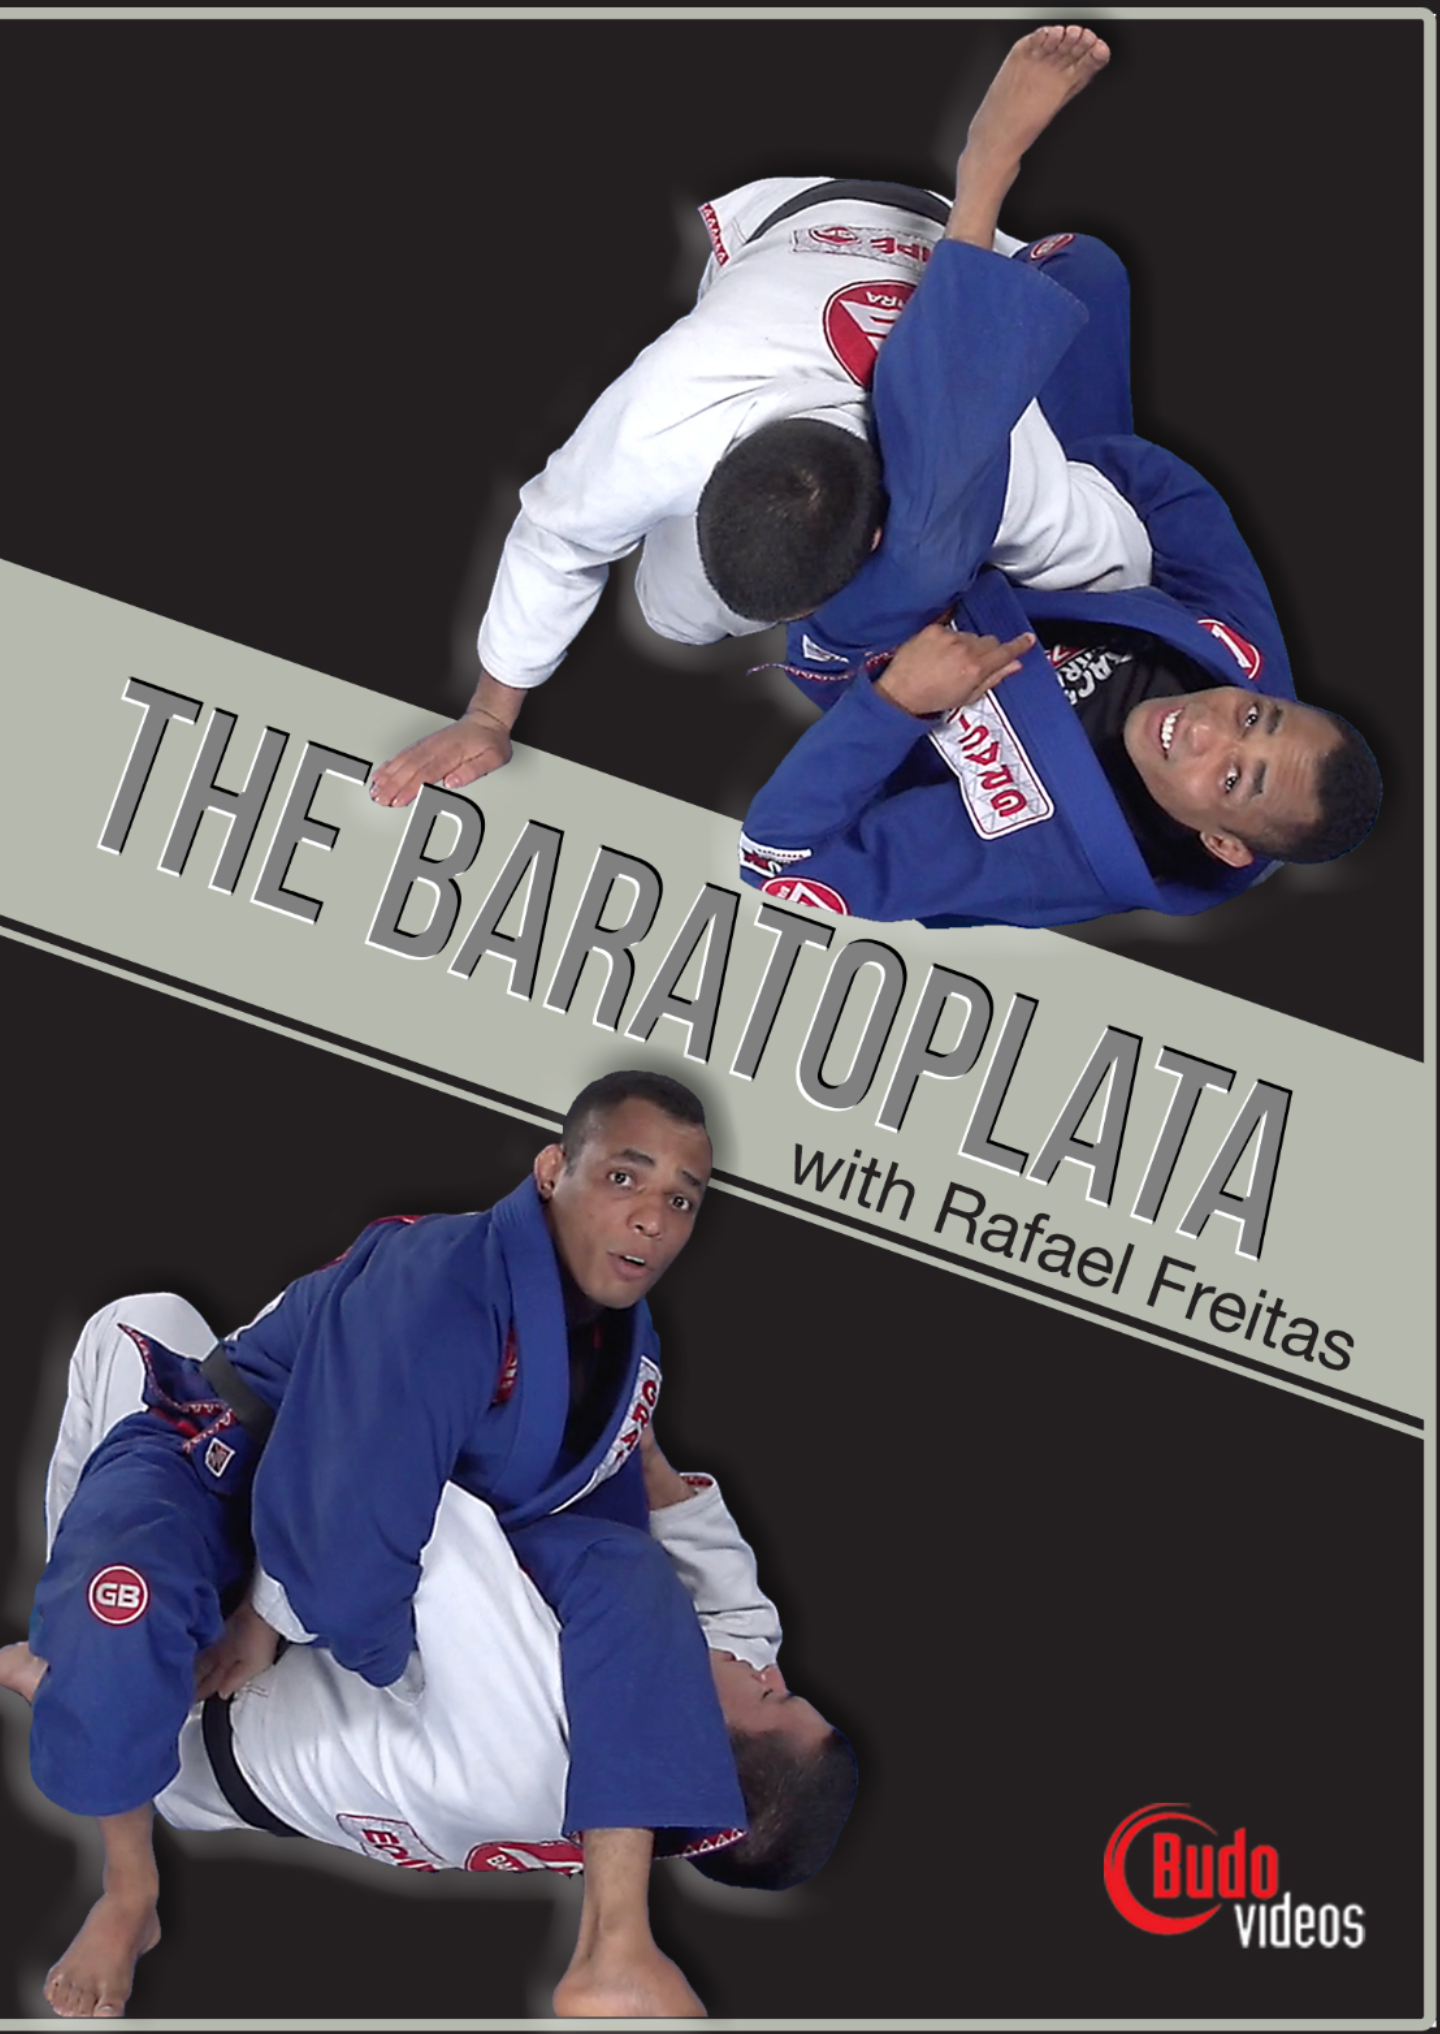 The Baratoplata by Rafael Freitas (On Demand)